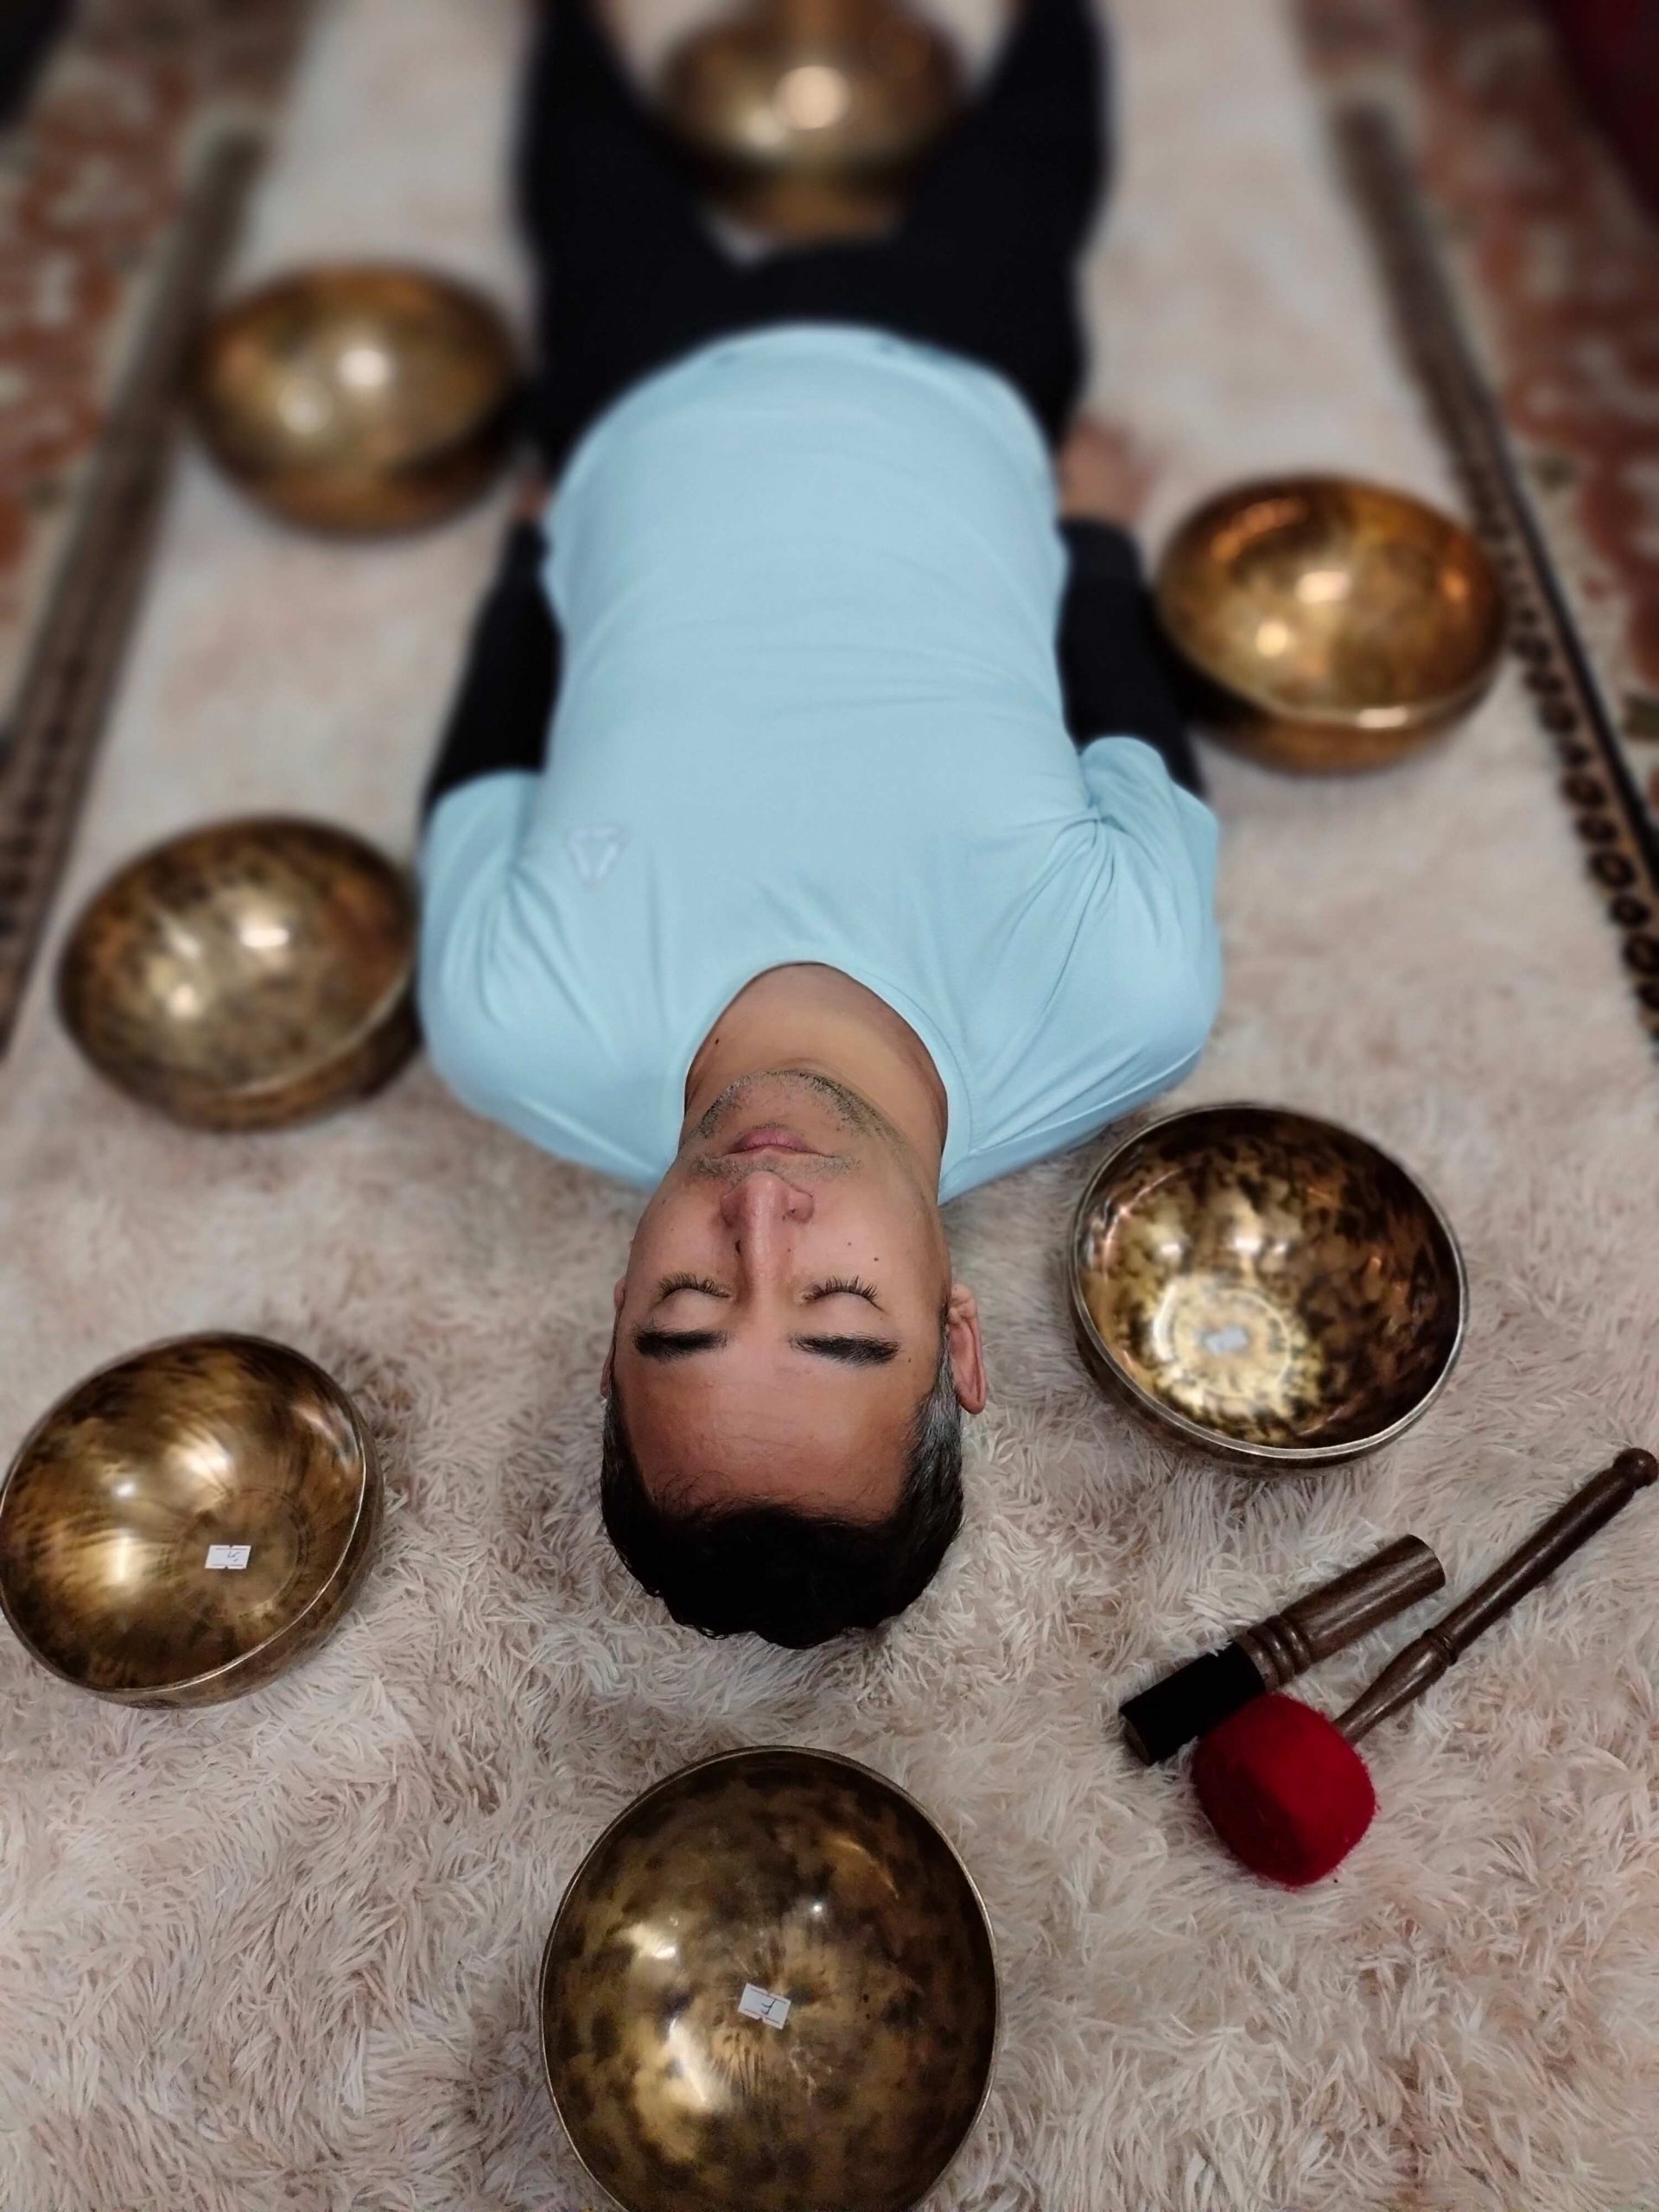 7 Chakra Singing Bowls Set- Full Moon Meditation Bowls